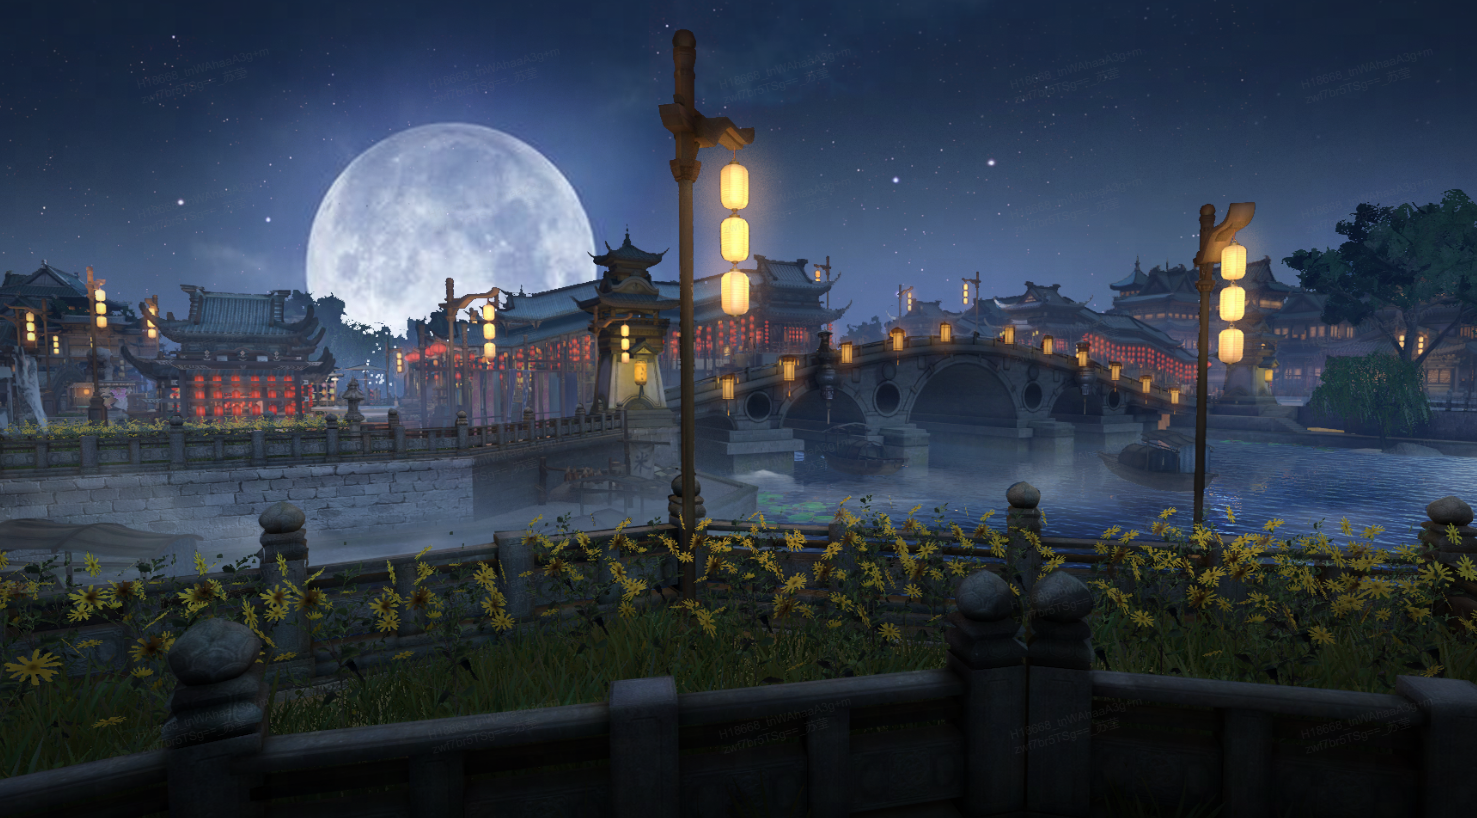 这是一幅描绘古典中国风格的夜景图，有明亮的月亮、灯笼、石桥和传统建筑，营造出宁静祥和的氛围。